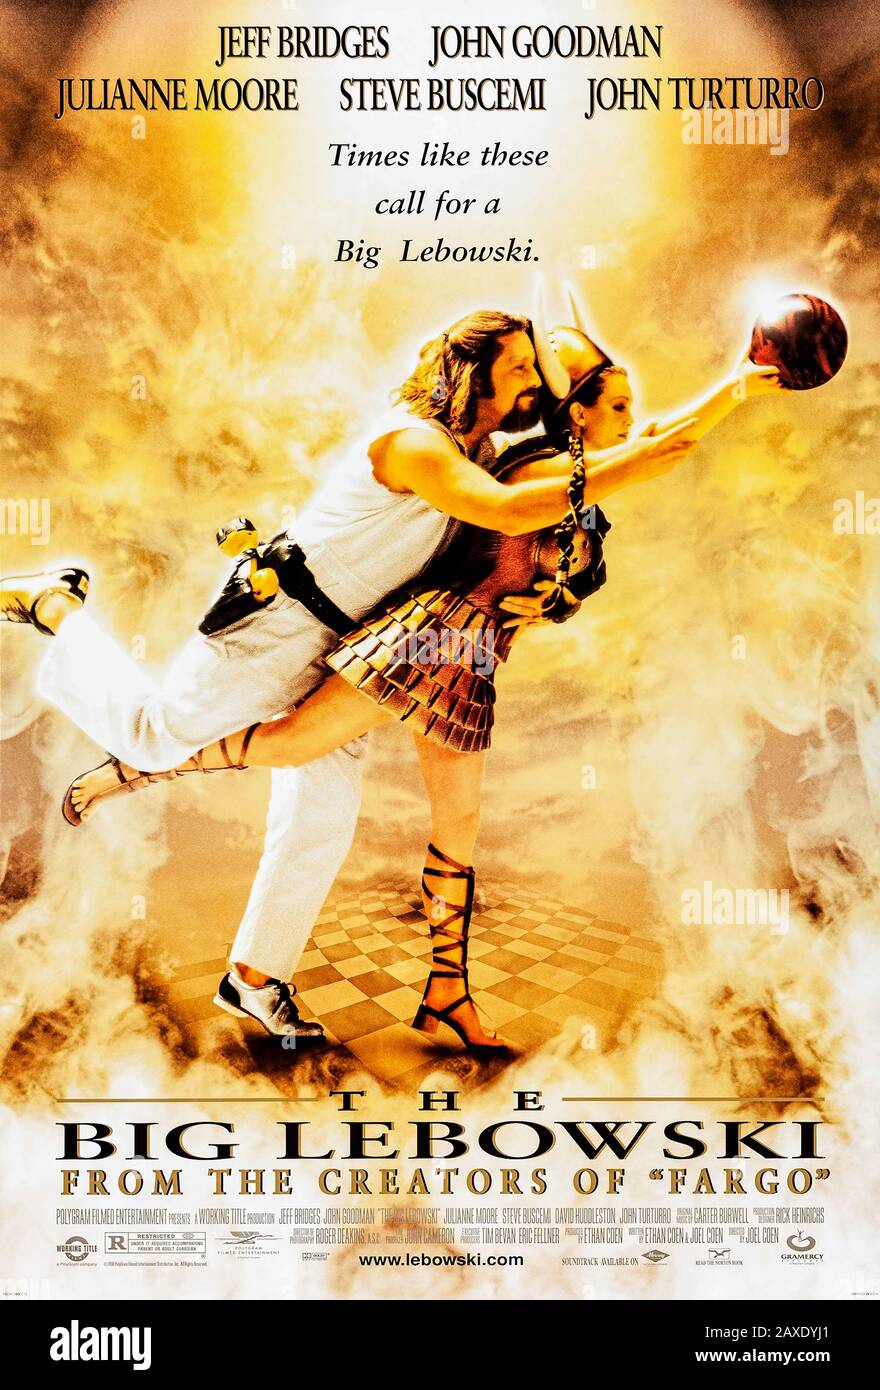 The Big Lebowski (1998) unter der Regie von Joel und Ethan Coen und mit Jeff Bridges, John Goodman, Julianne Moore und John Turturro in den Hauptrollen. Kultklassiker über "Der Dude" und seine Reise für die Entschädigung für seinen zerstörten Teppich. Stockfoto